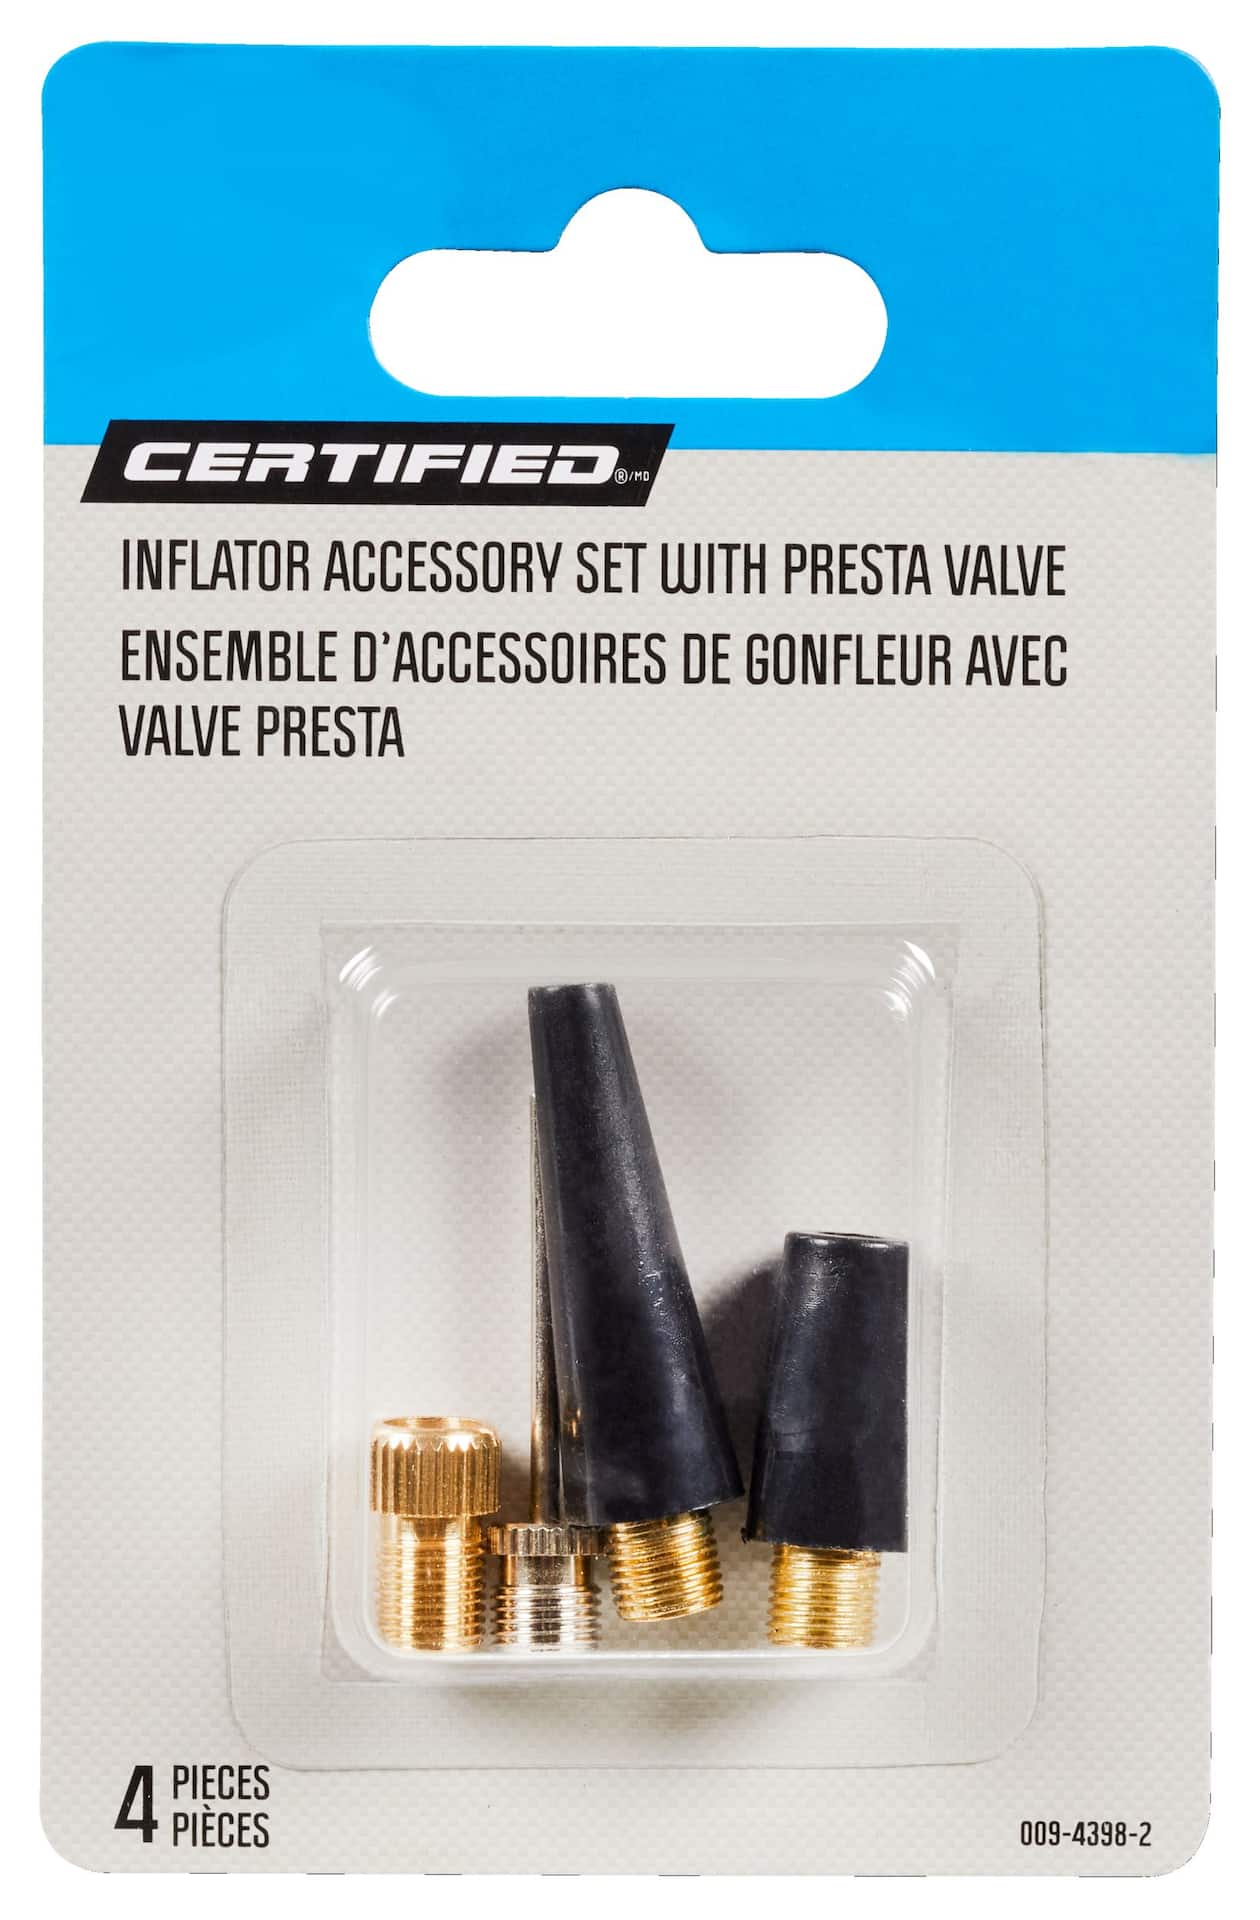 Accessoires de gonflage Certified avec adaptateur de valve Presta